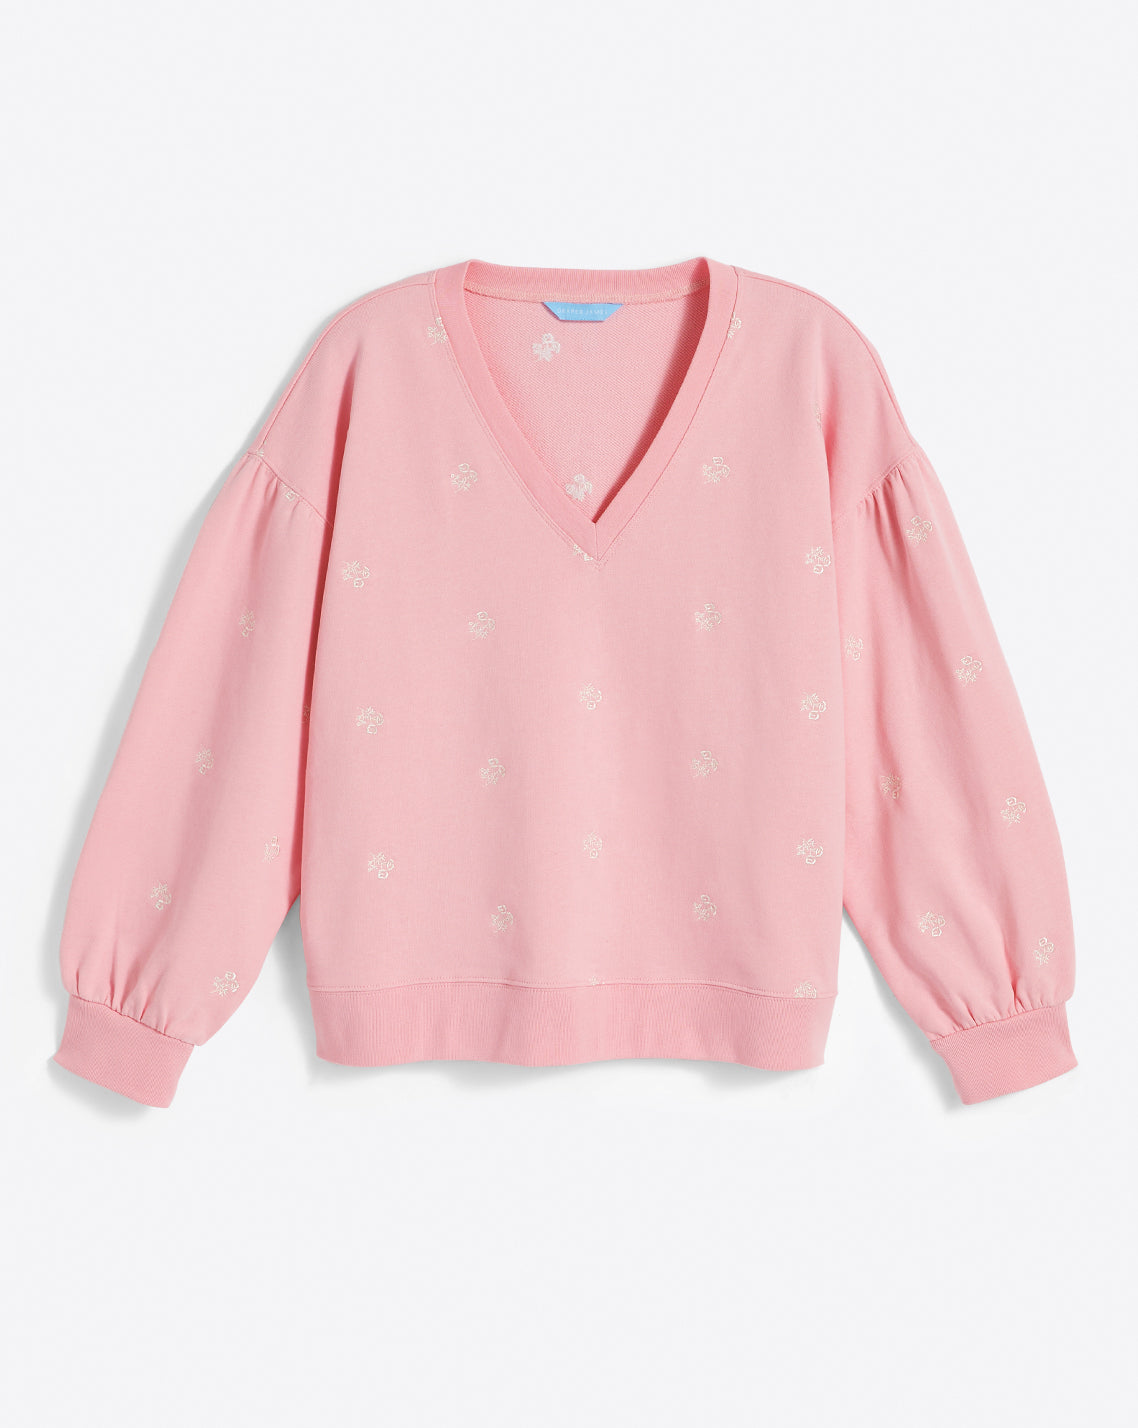 Bobbie Sweatshirt in Pink Embroidered Viola